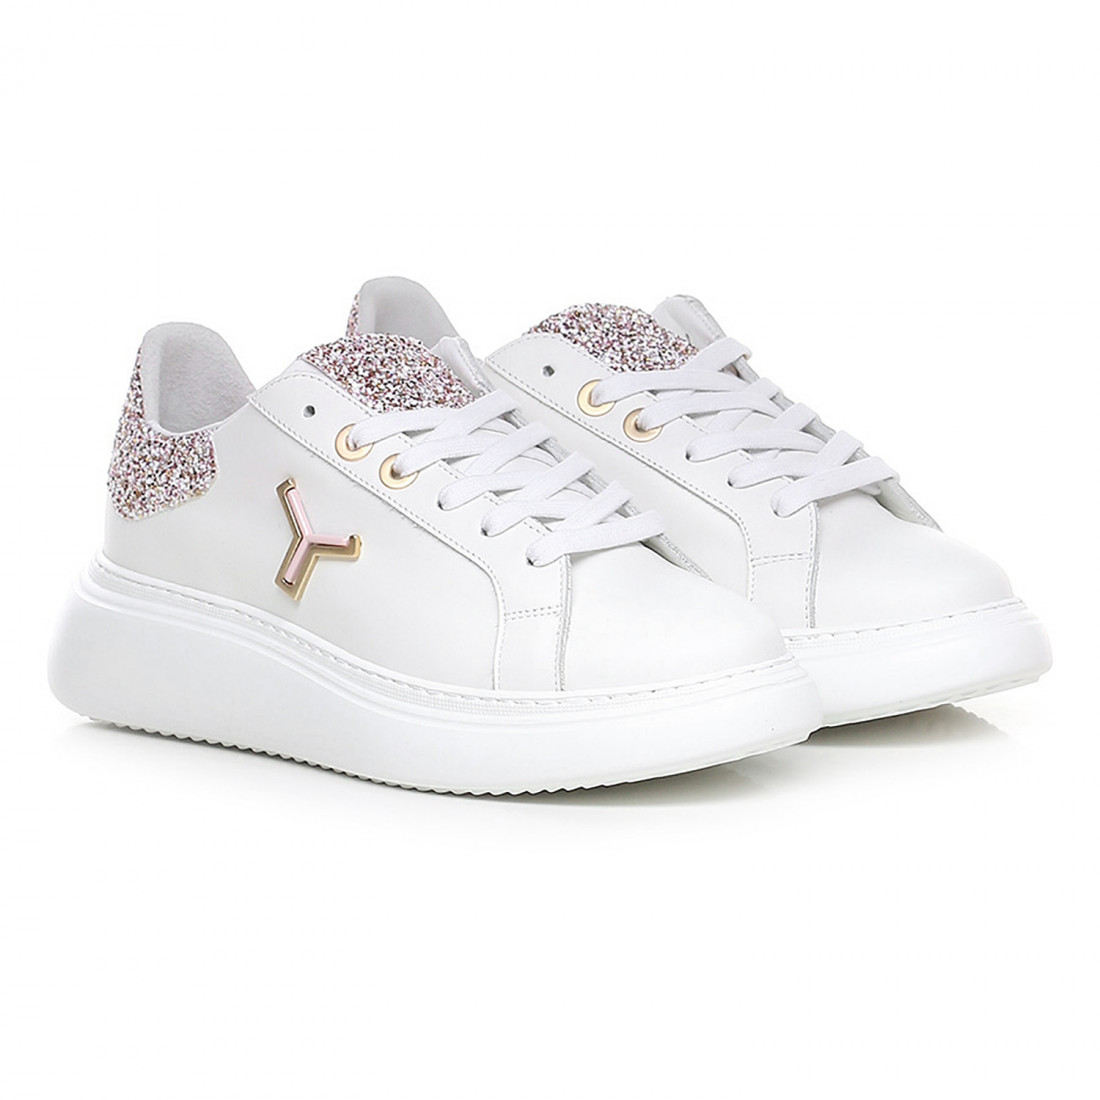 Tonakai SKLD GC10 women's white sneaker with pink glitter